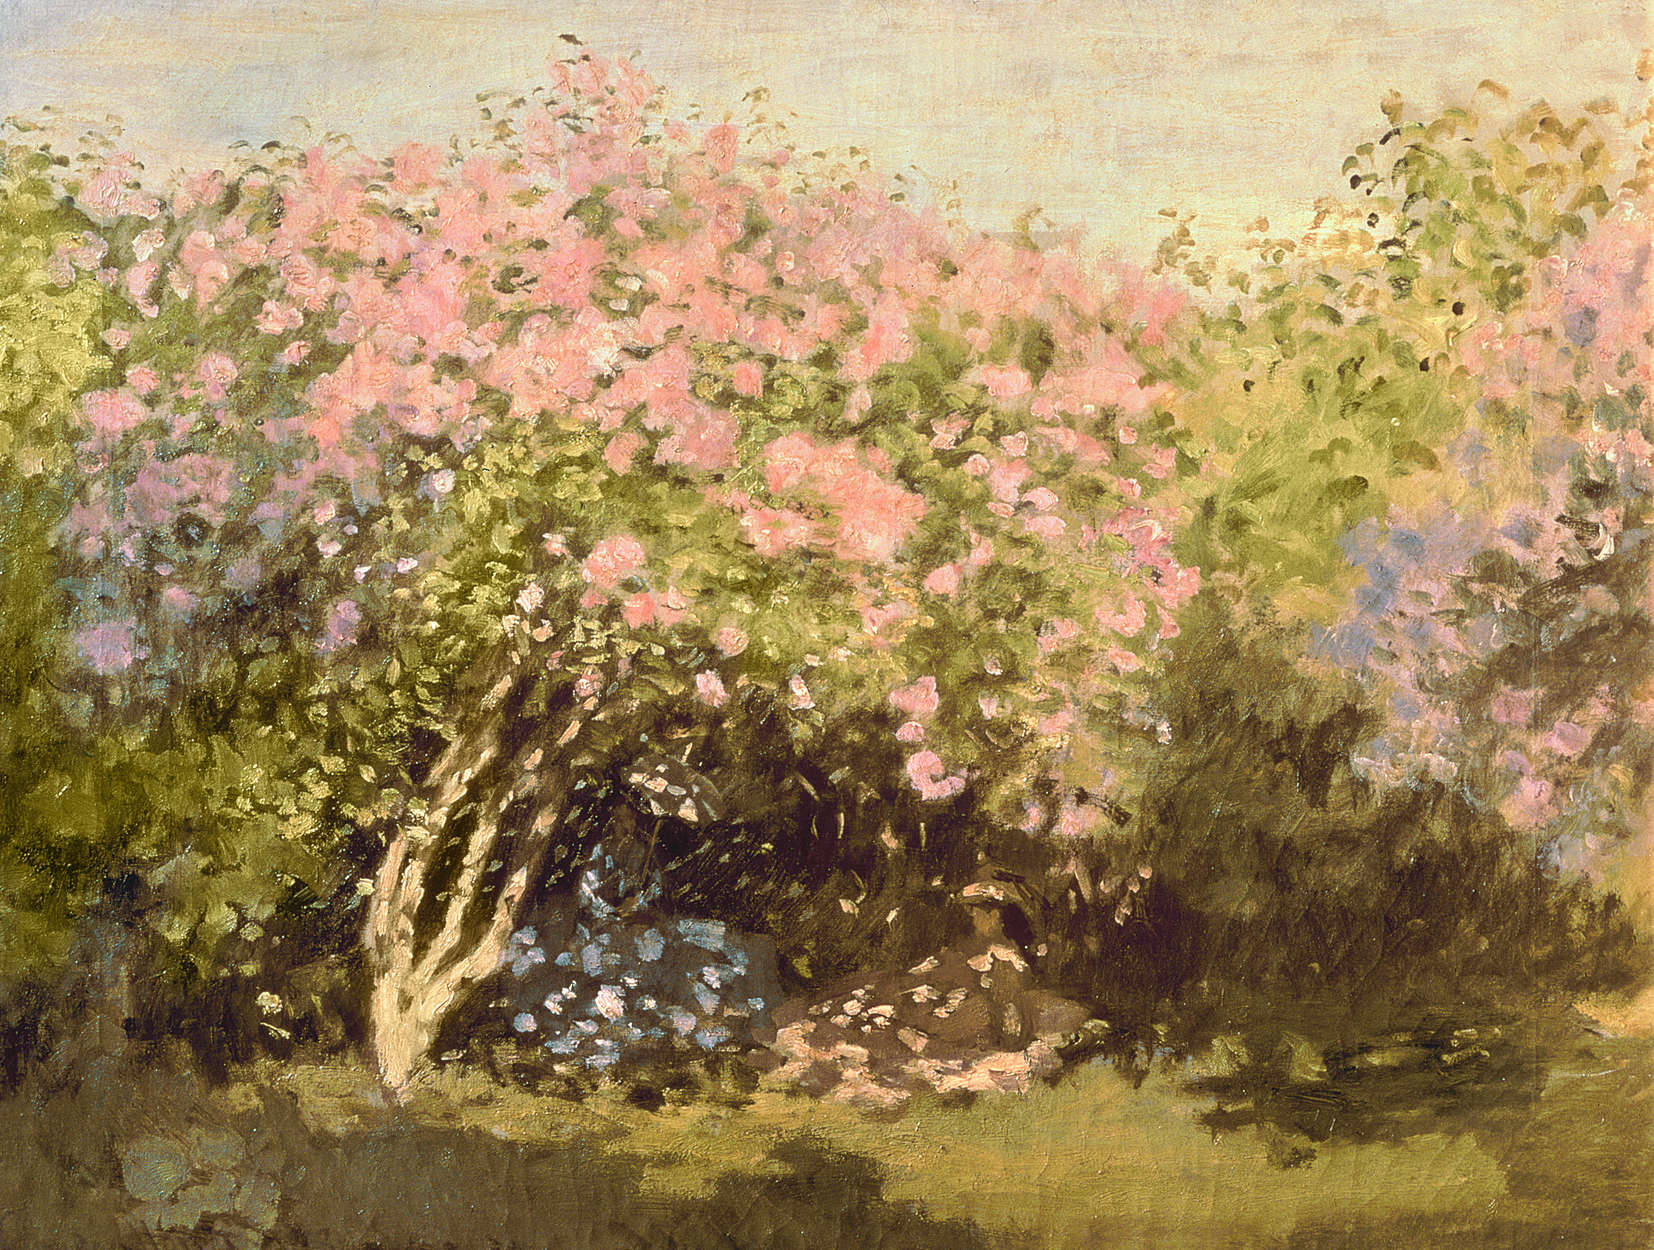             Papier peint panoramique "Lilas en fleurs au soleil" de Claude Monet
        